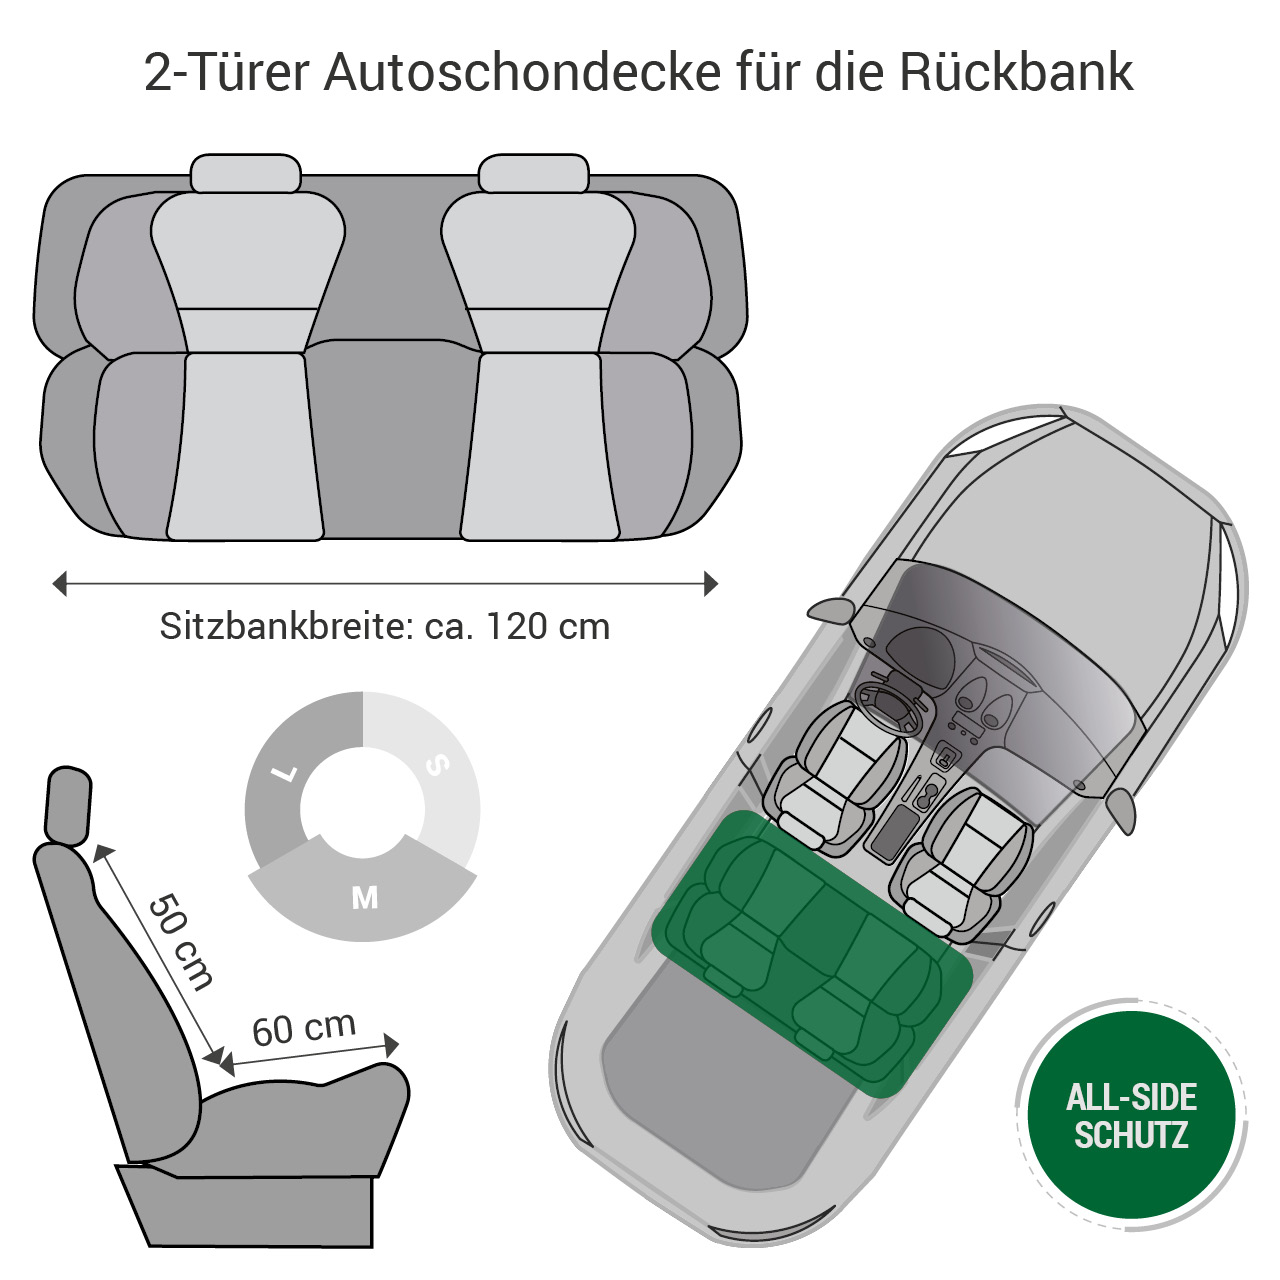 Doctor Bark - Autoschondecke für Hunde - Rückbank 2-Türer / Cabrio Gr. M - schwarz